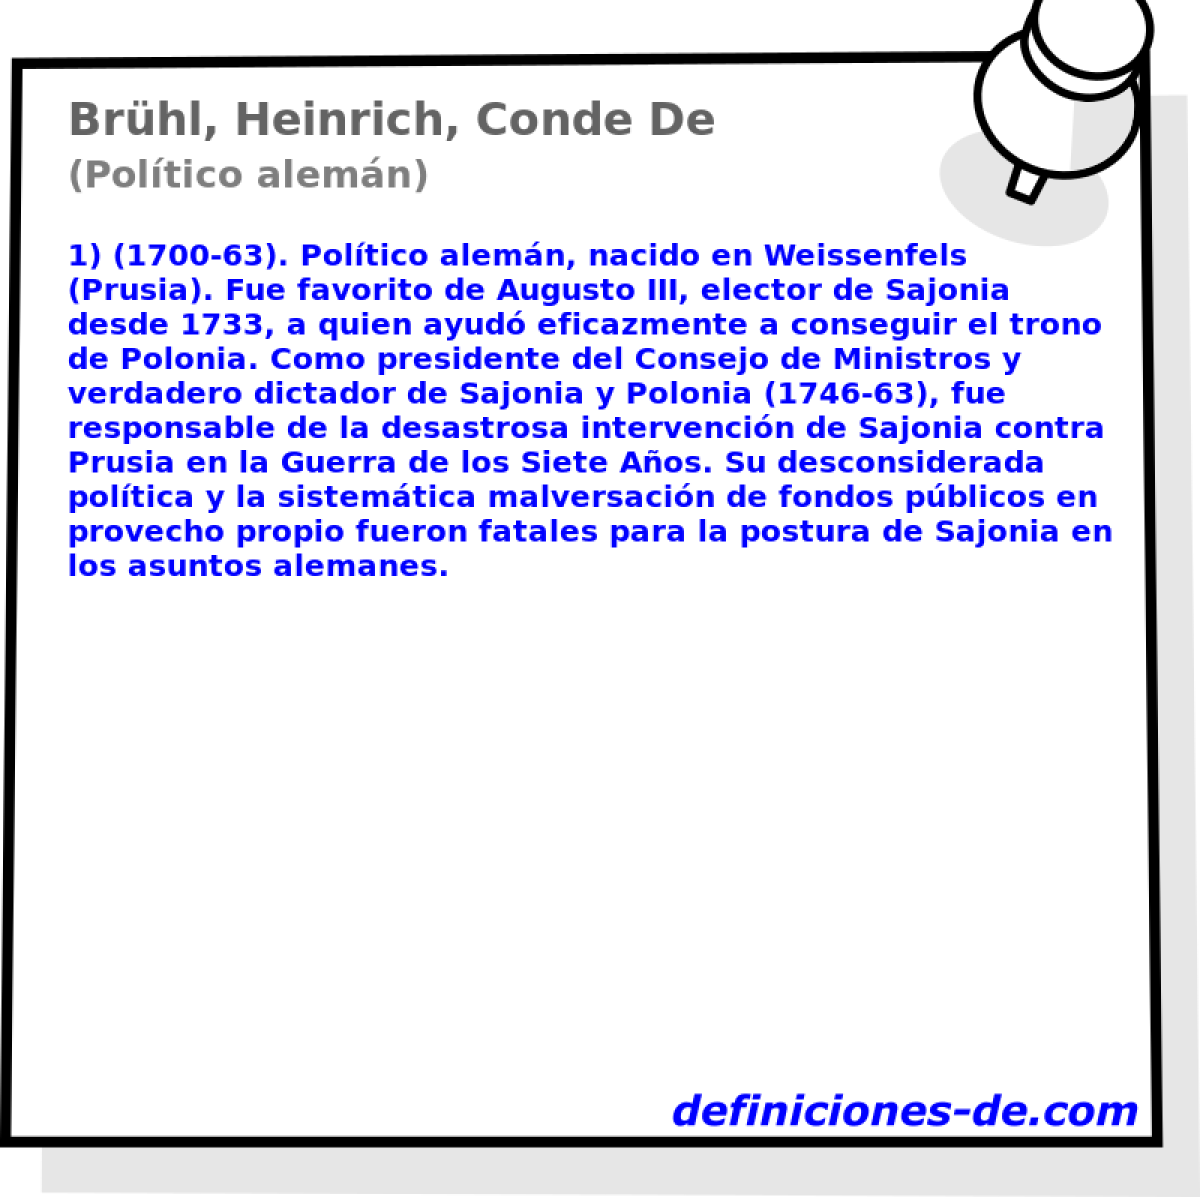 Brhl, Heinrich, Conde De (Poltico alemn)